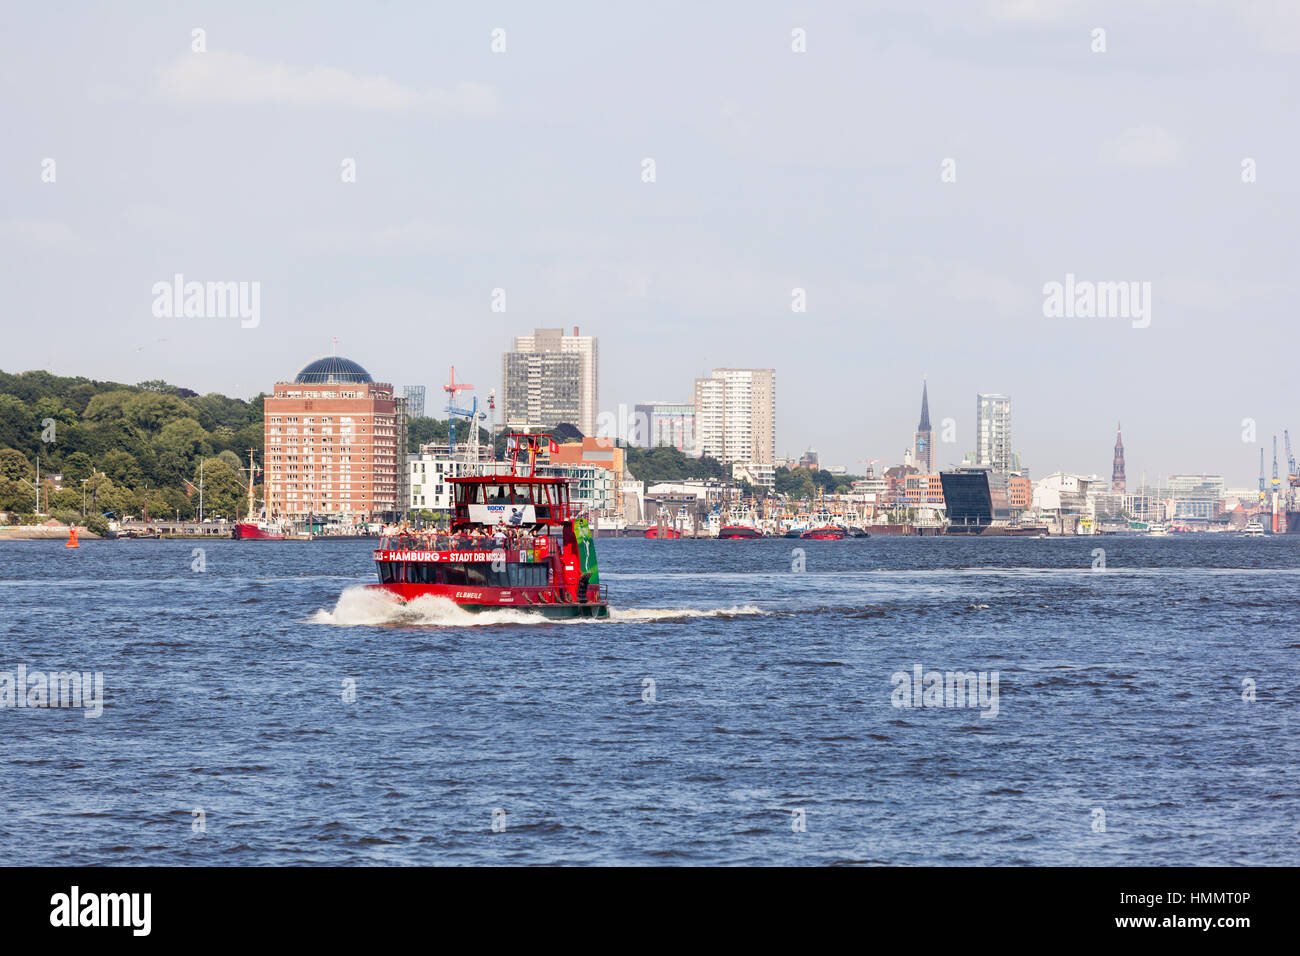 Hamburg, Deutschland - 5 Juli: Touristen auf einem Schiff auf der Elbe in Hamburg, Deutschland am 5. Juli 2013 Stockfoto